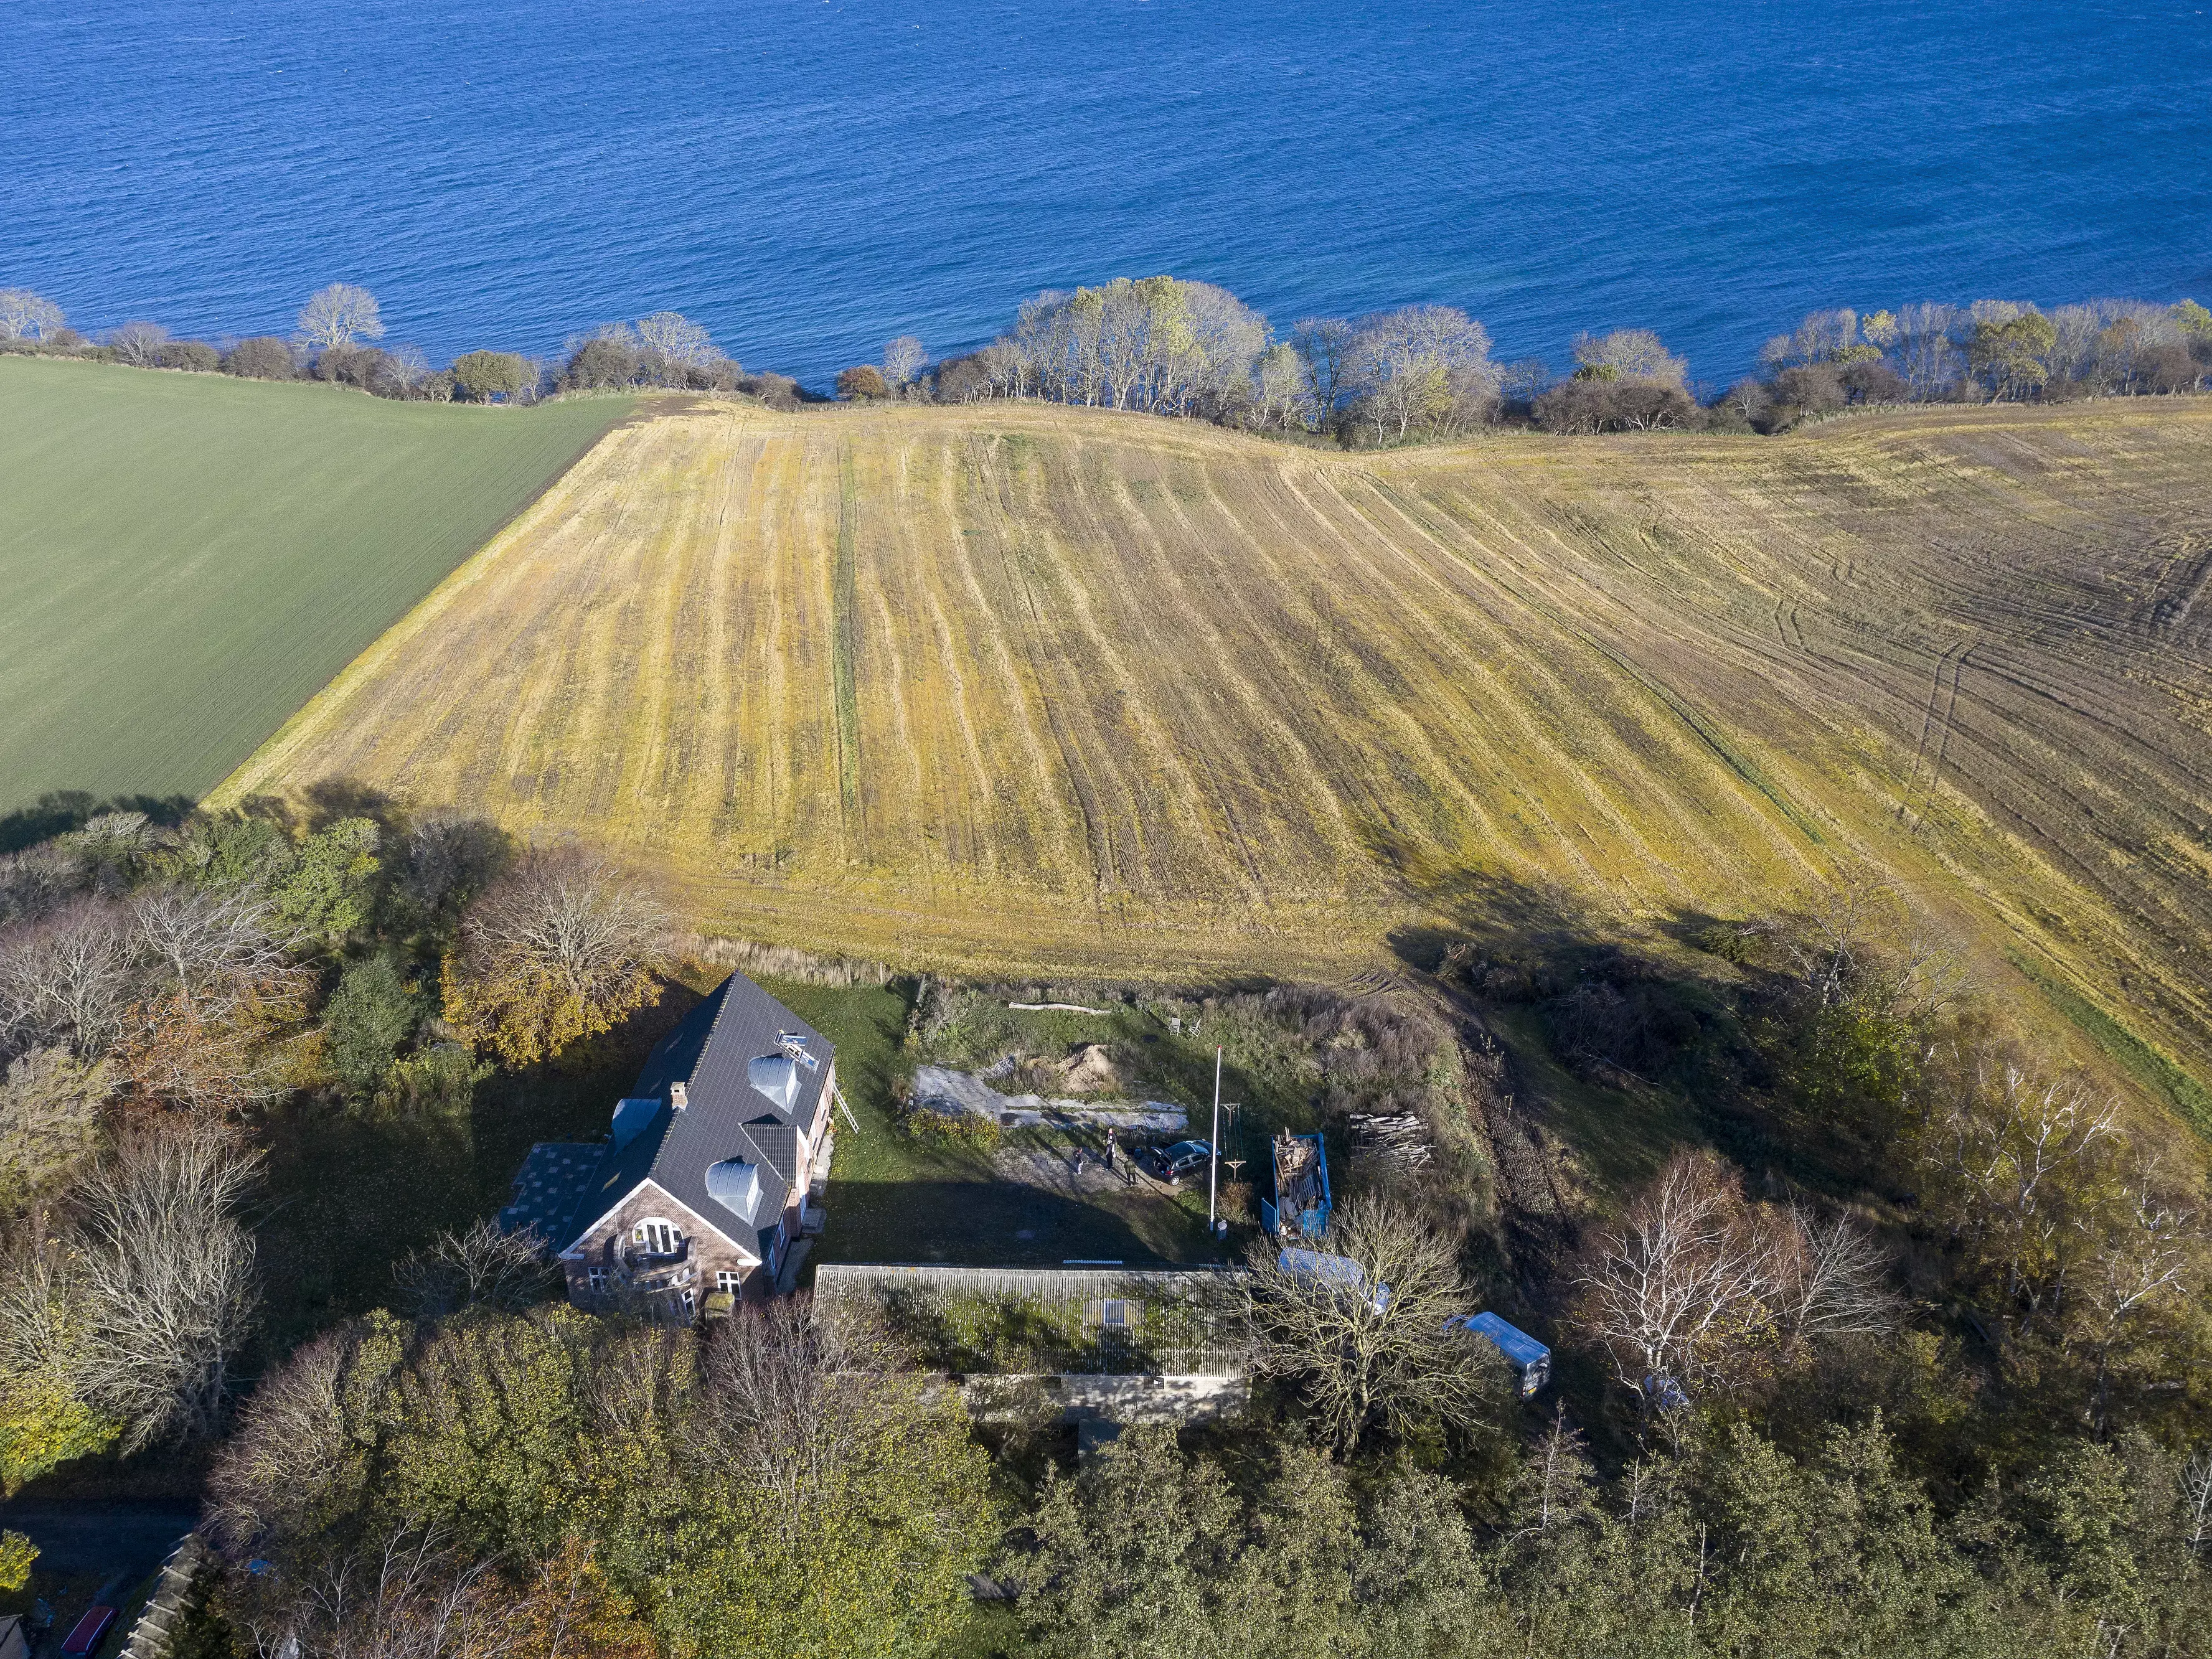 Vue aérienne d'une maison individuelle au bord de la mer, entourée d'arbres et de champs.